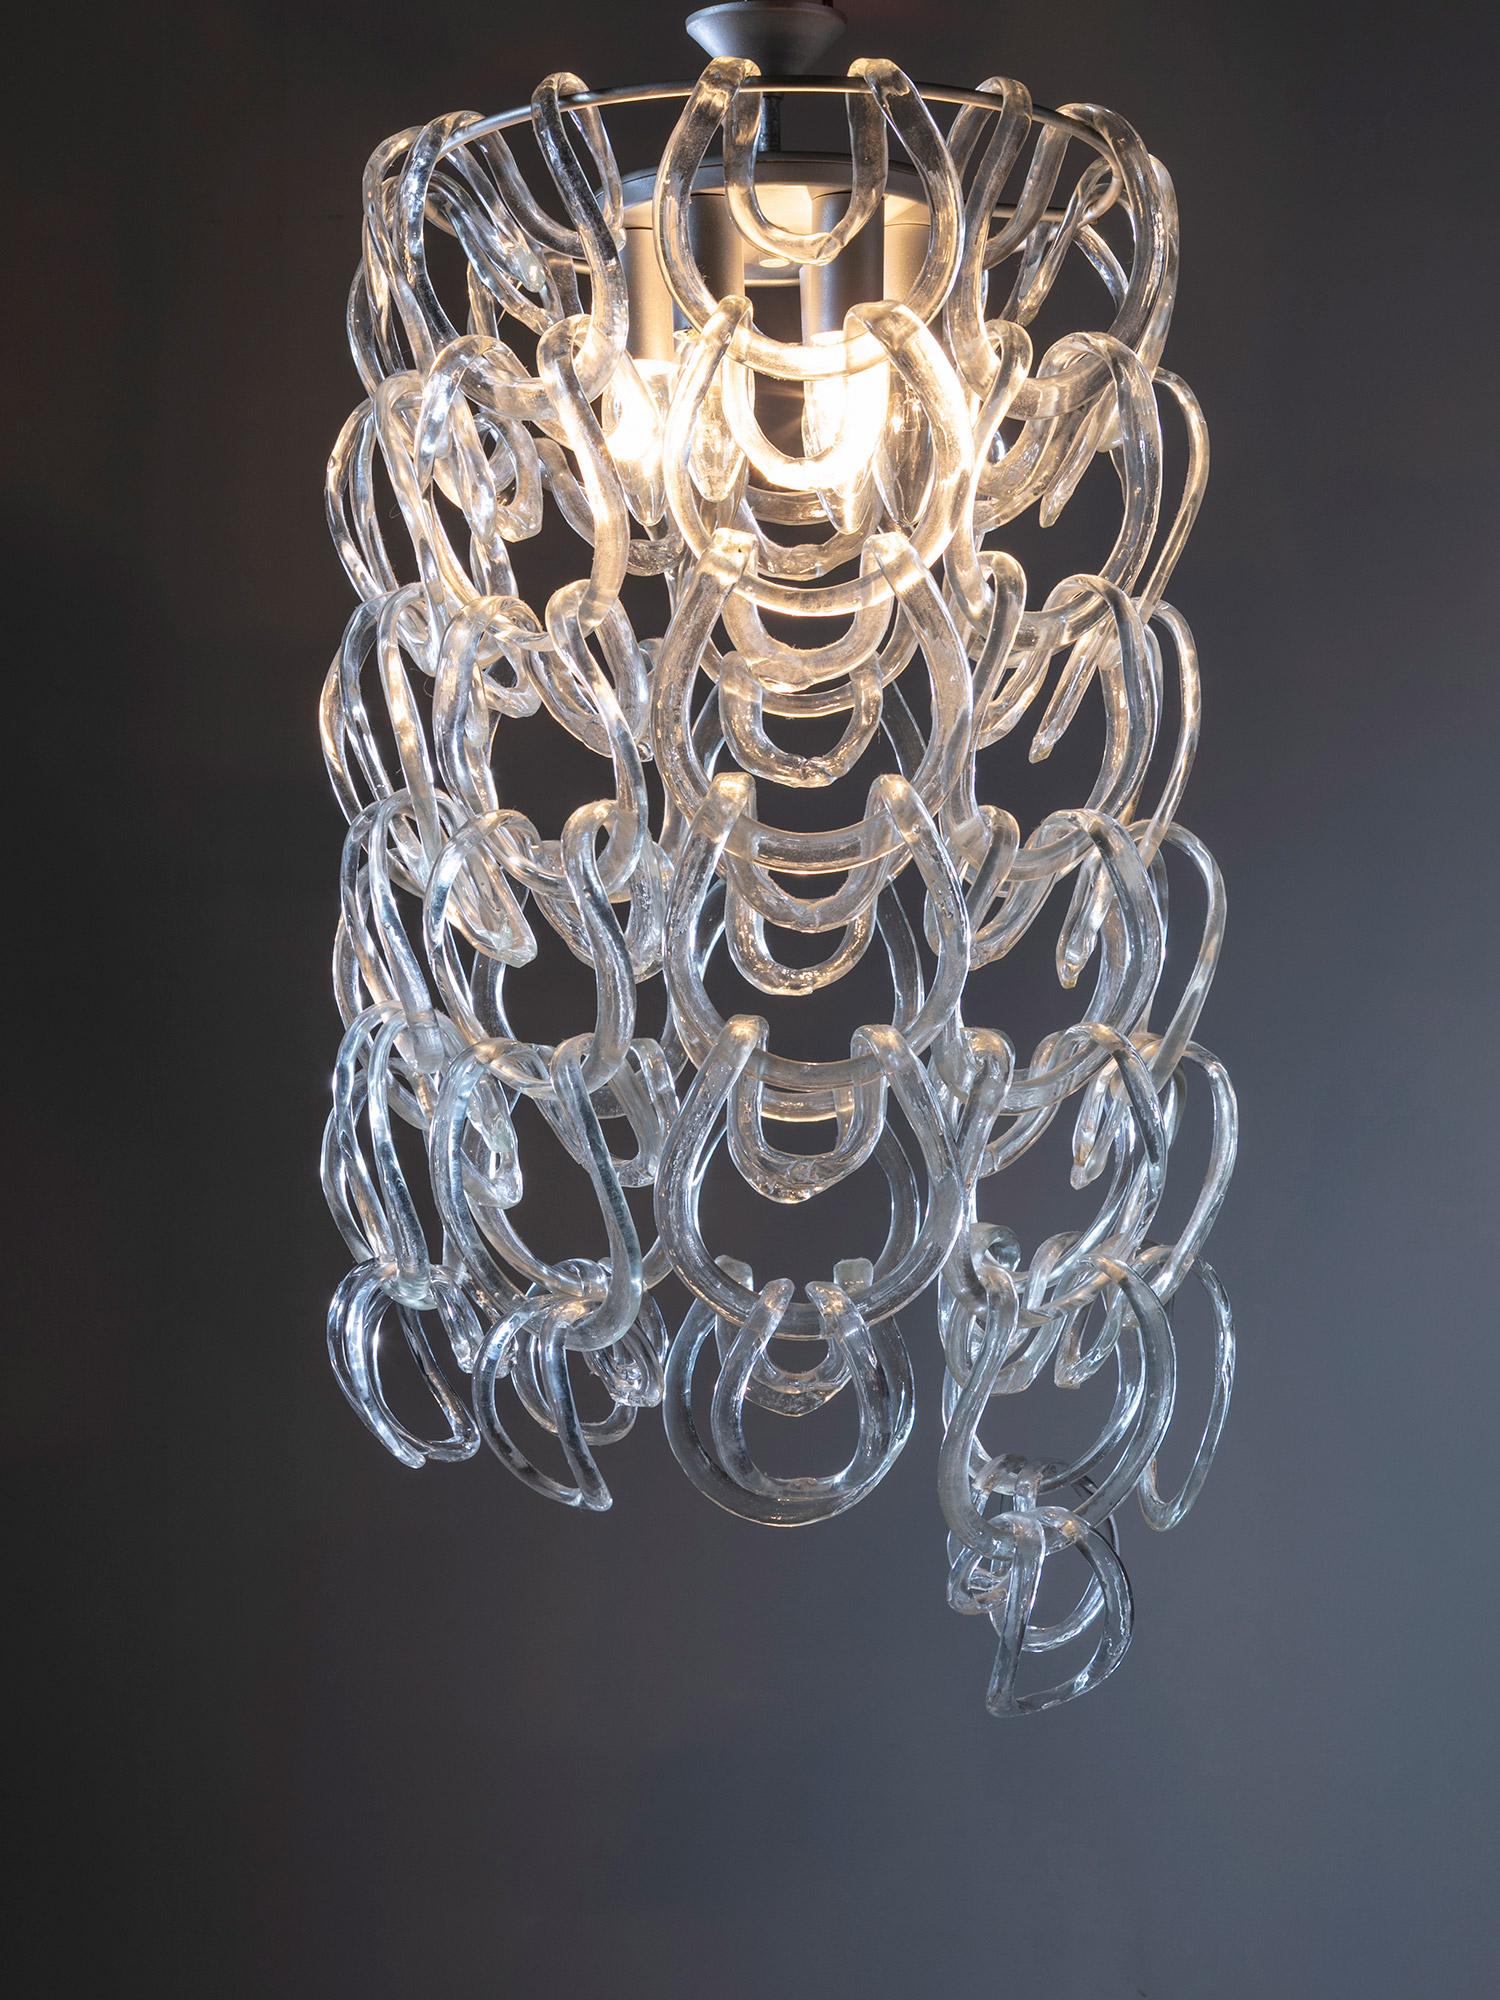 Lustre Giogali d'Angelo Mangiarotti pour Vistosi, Murano.
Le cadre rond en métal permet de relier les rubans de verre en créant une chute de verre brillante. 